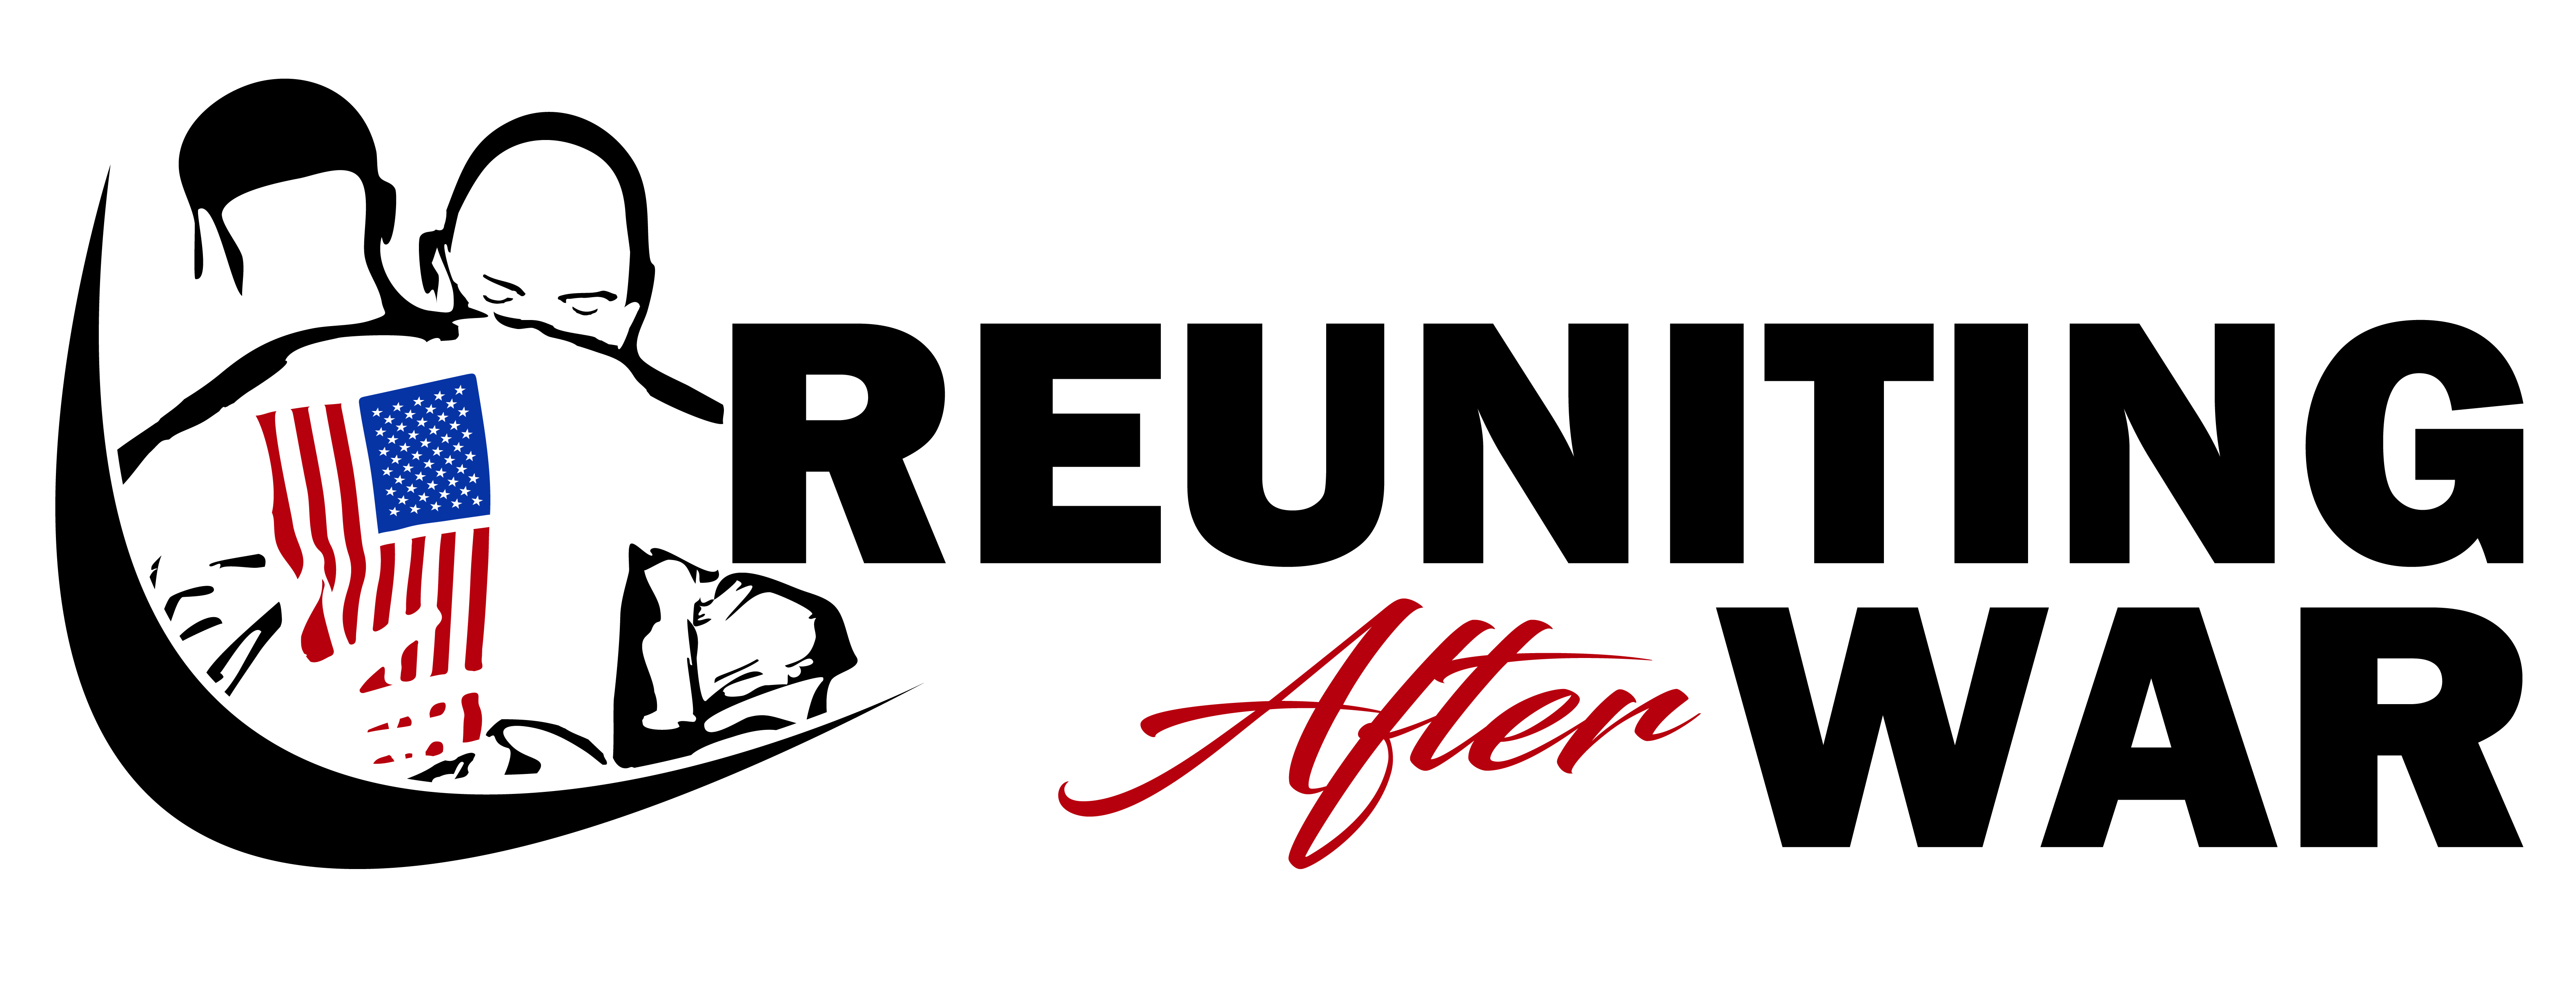 Reuniting After War logo